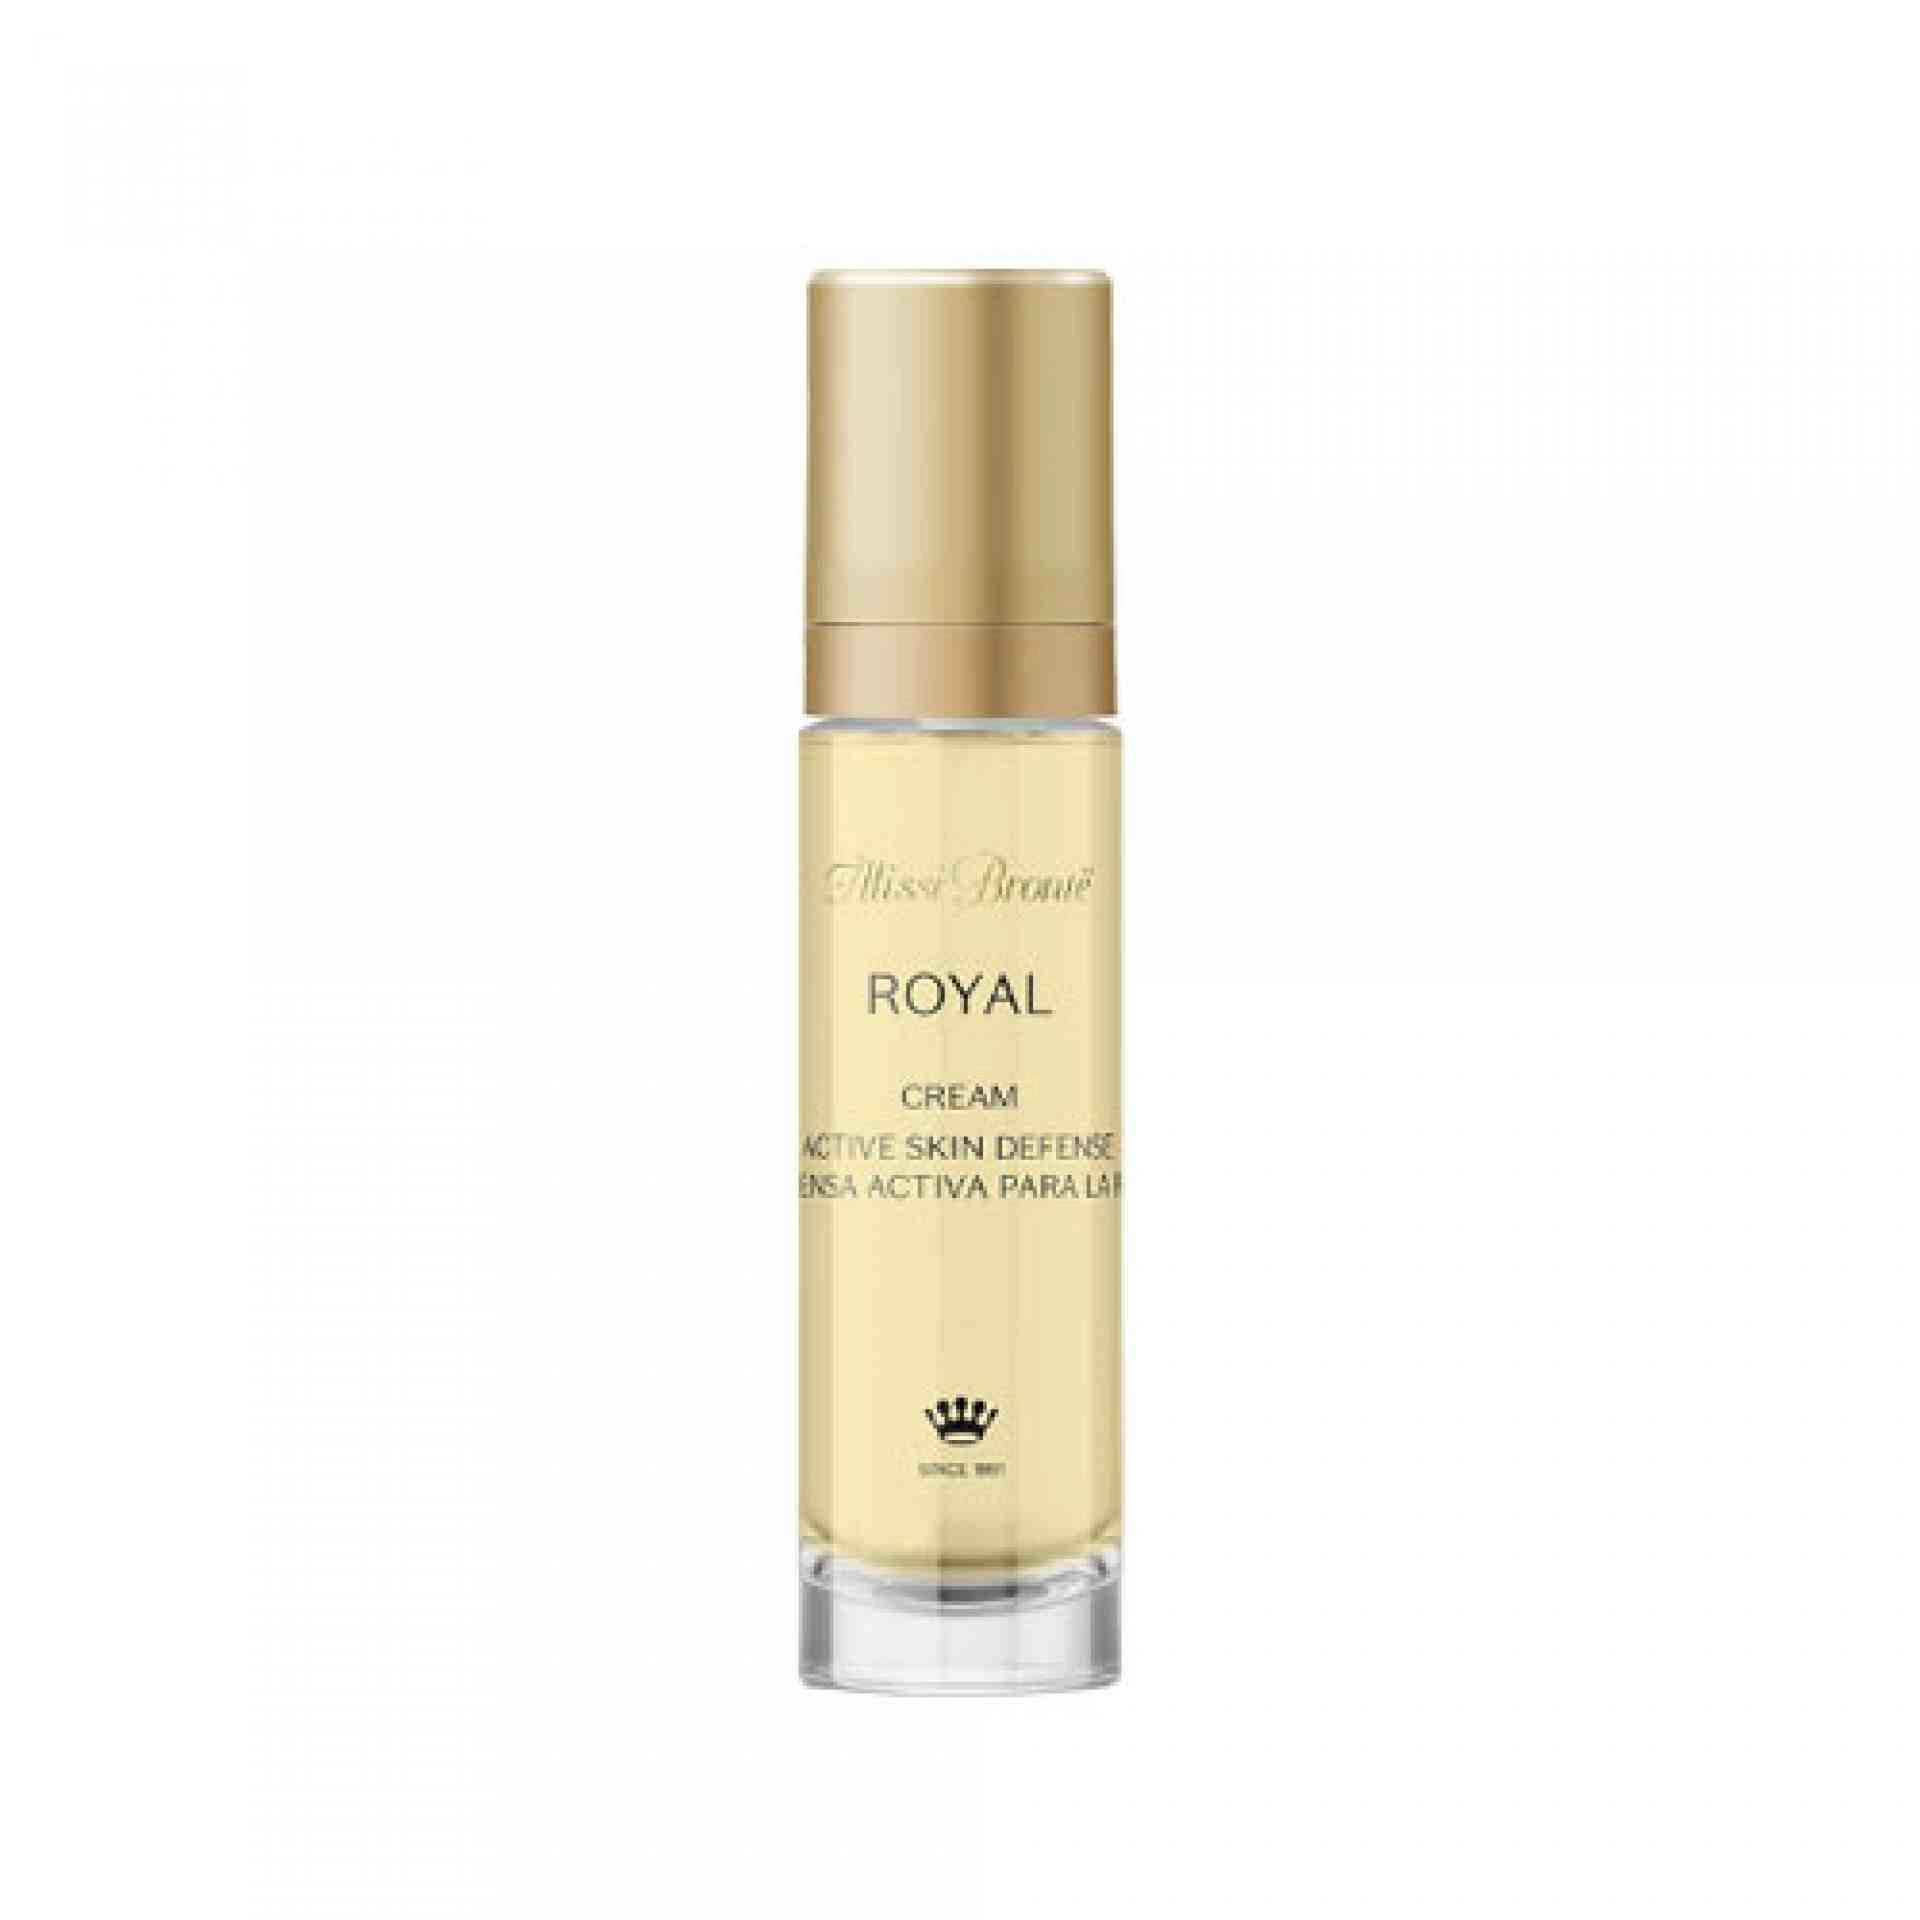 Cream Active Skin Defense I Crema potenciadora de la defensa activa 50ml - Royal - Alissi Brontë ®